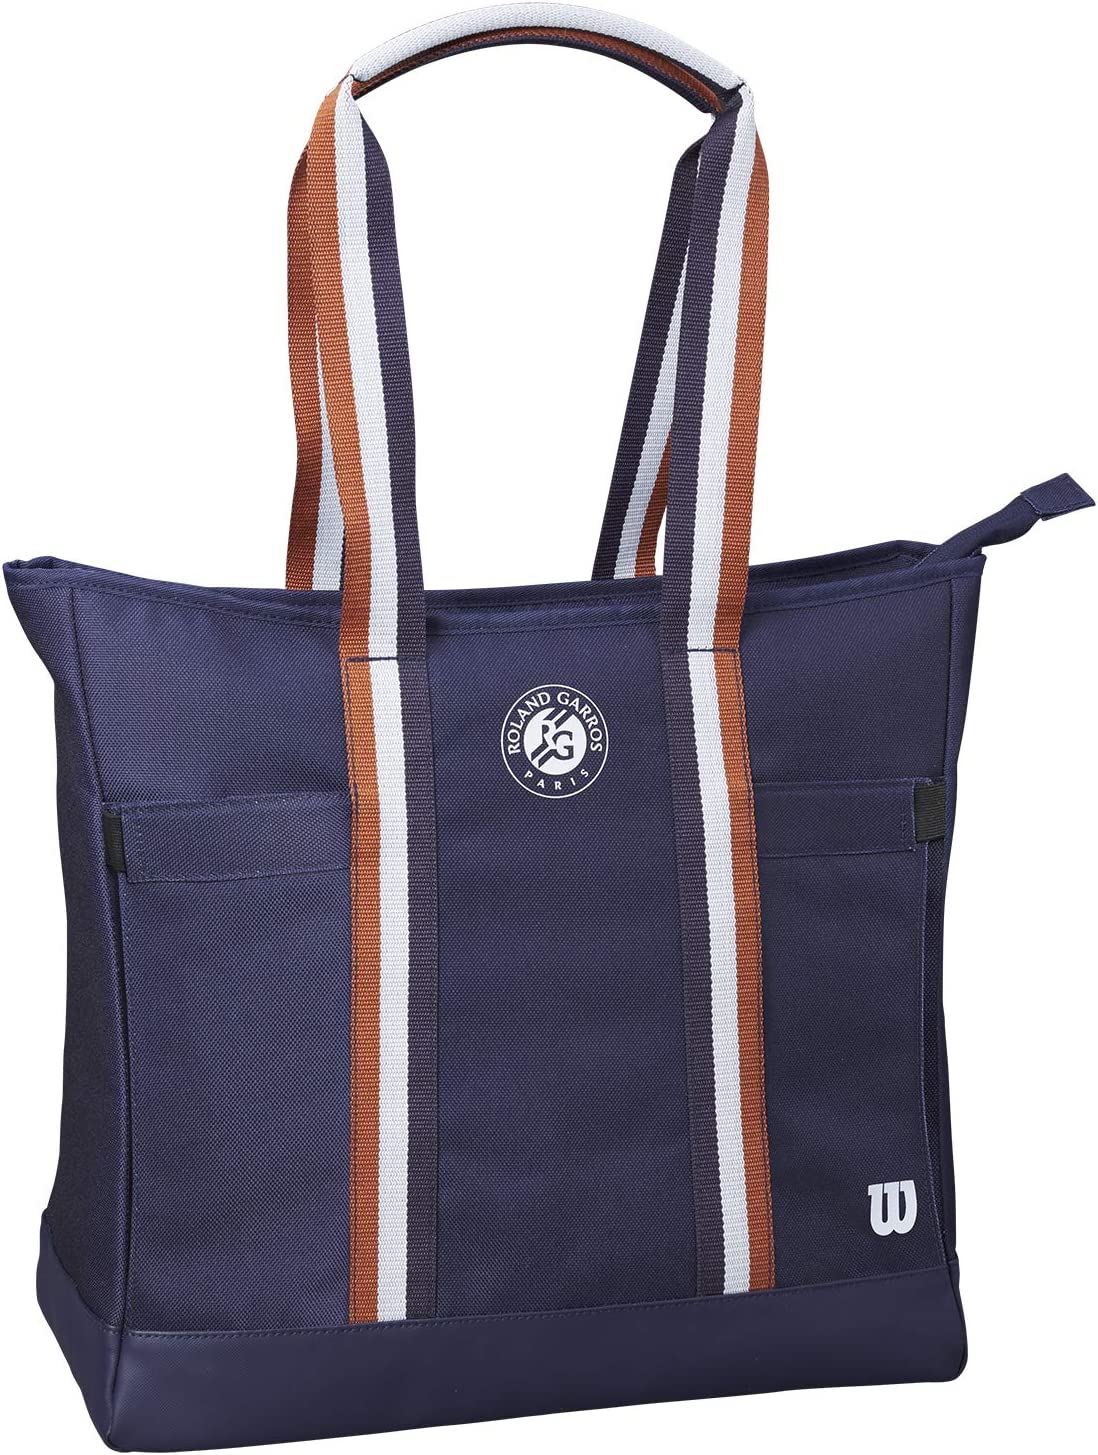 wilson tennis bag for ladies